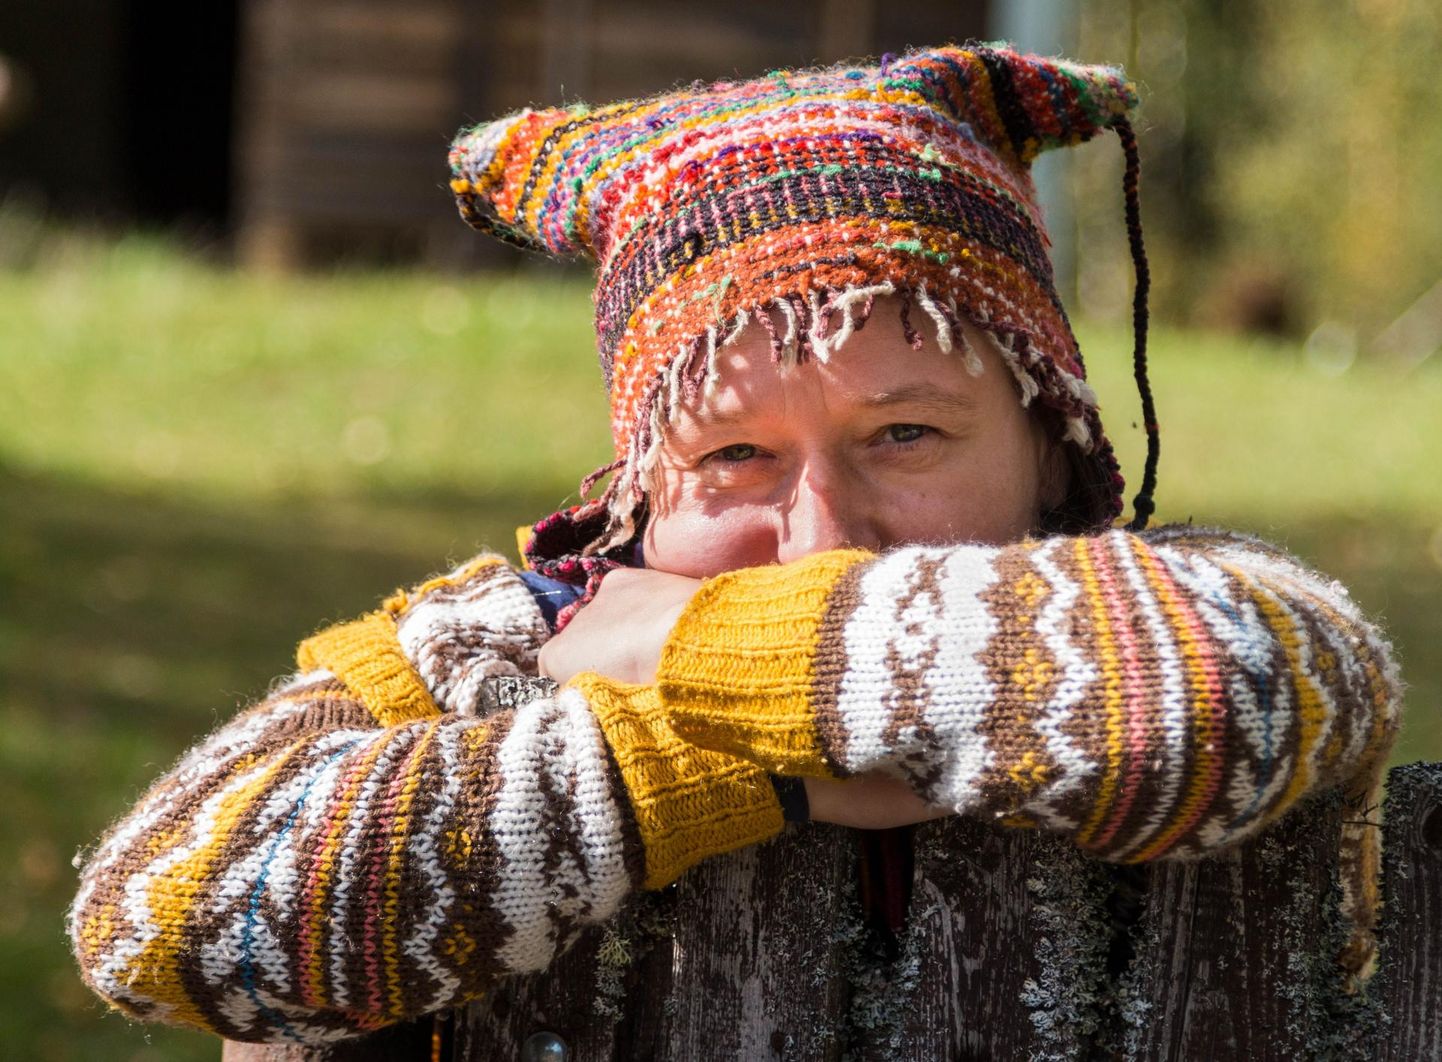 Festivali peakorraldaja on ungarlanna Edina Csüllög, kes elab Tiilige külas.